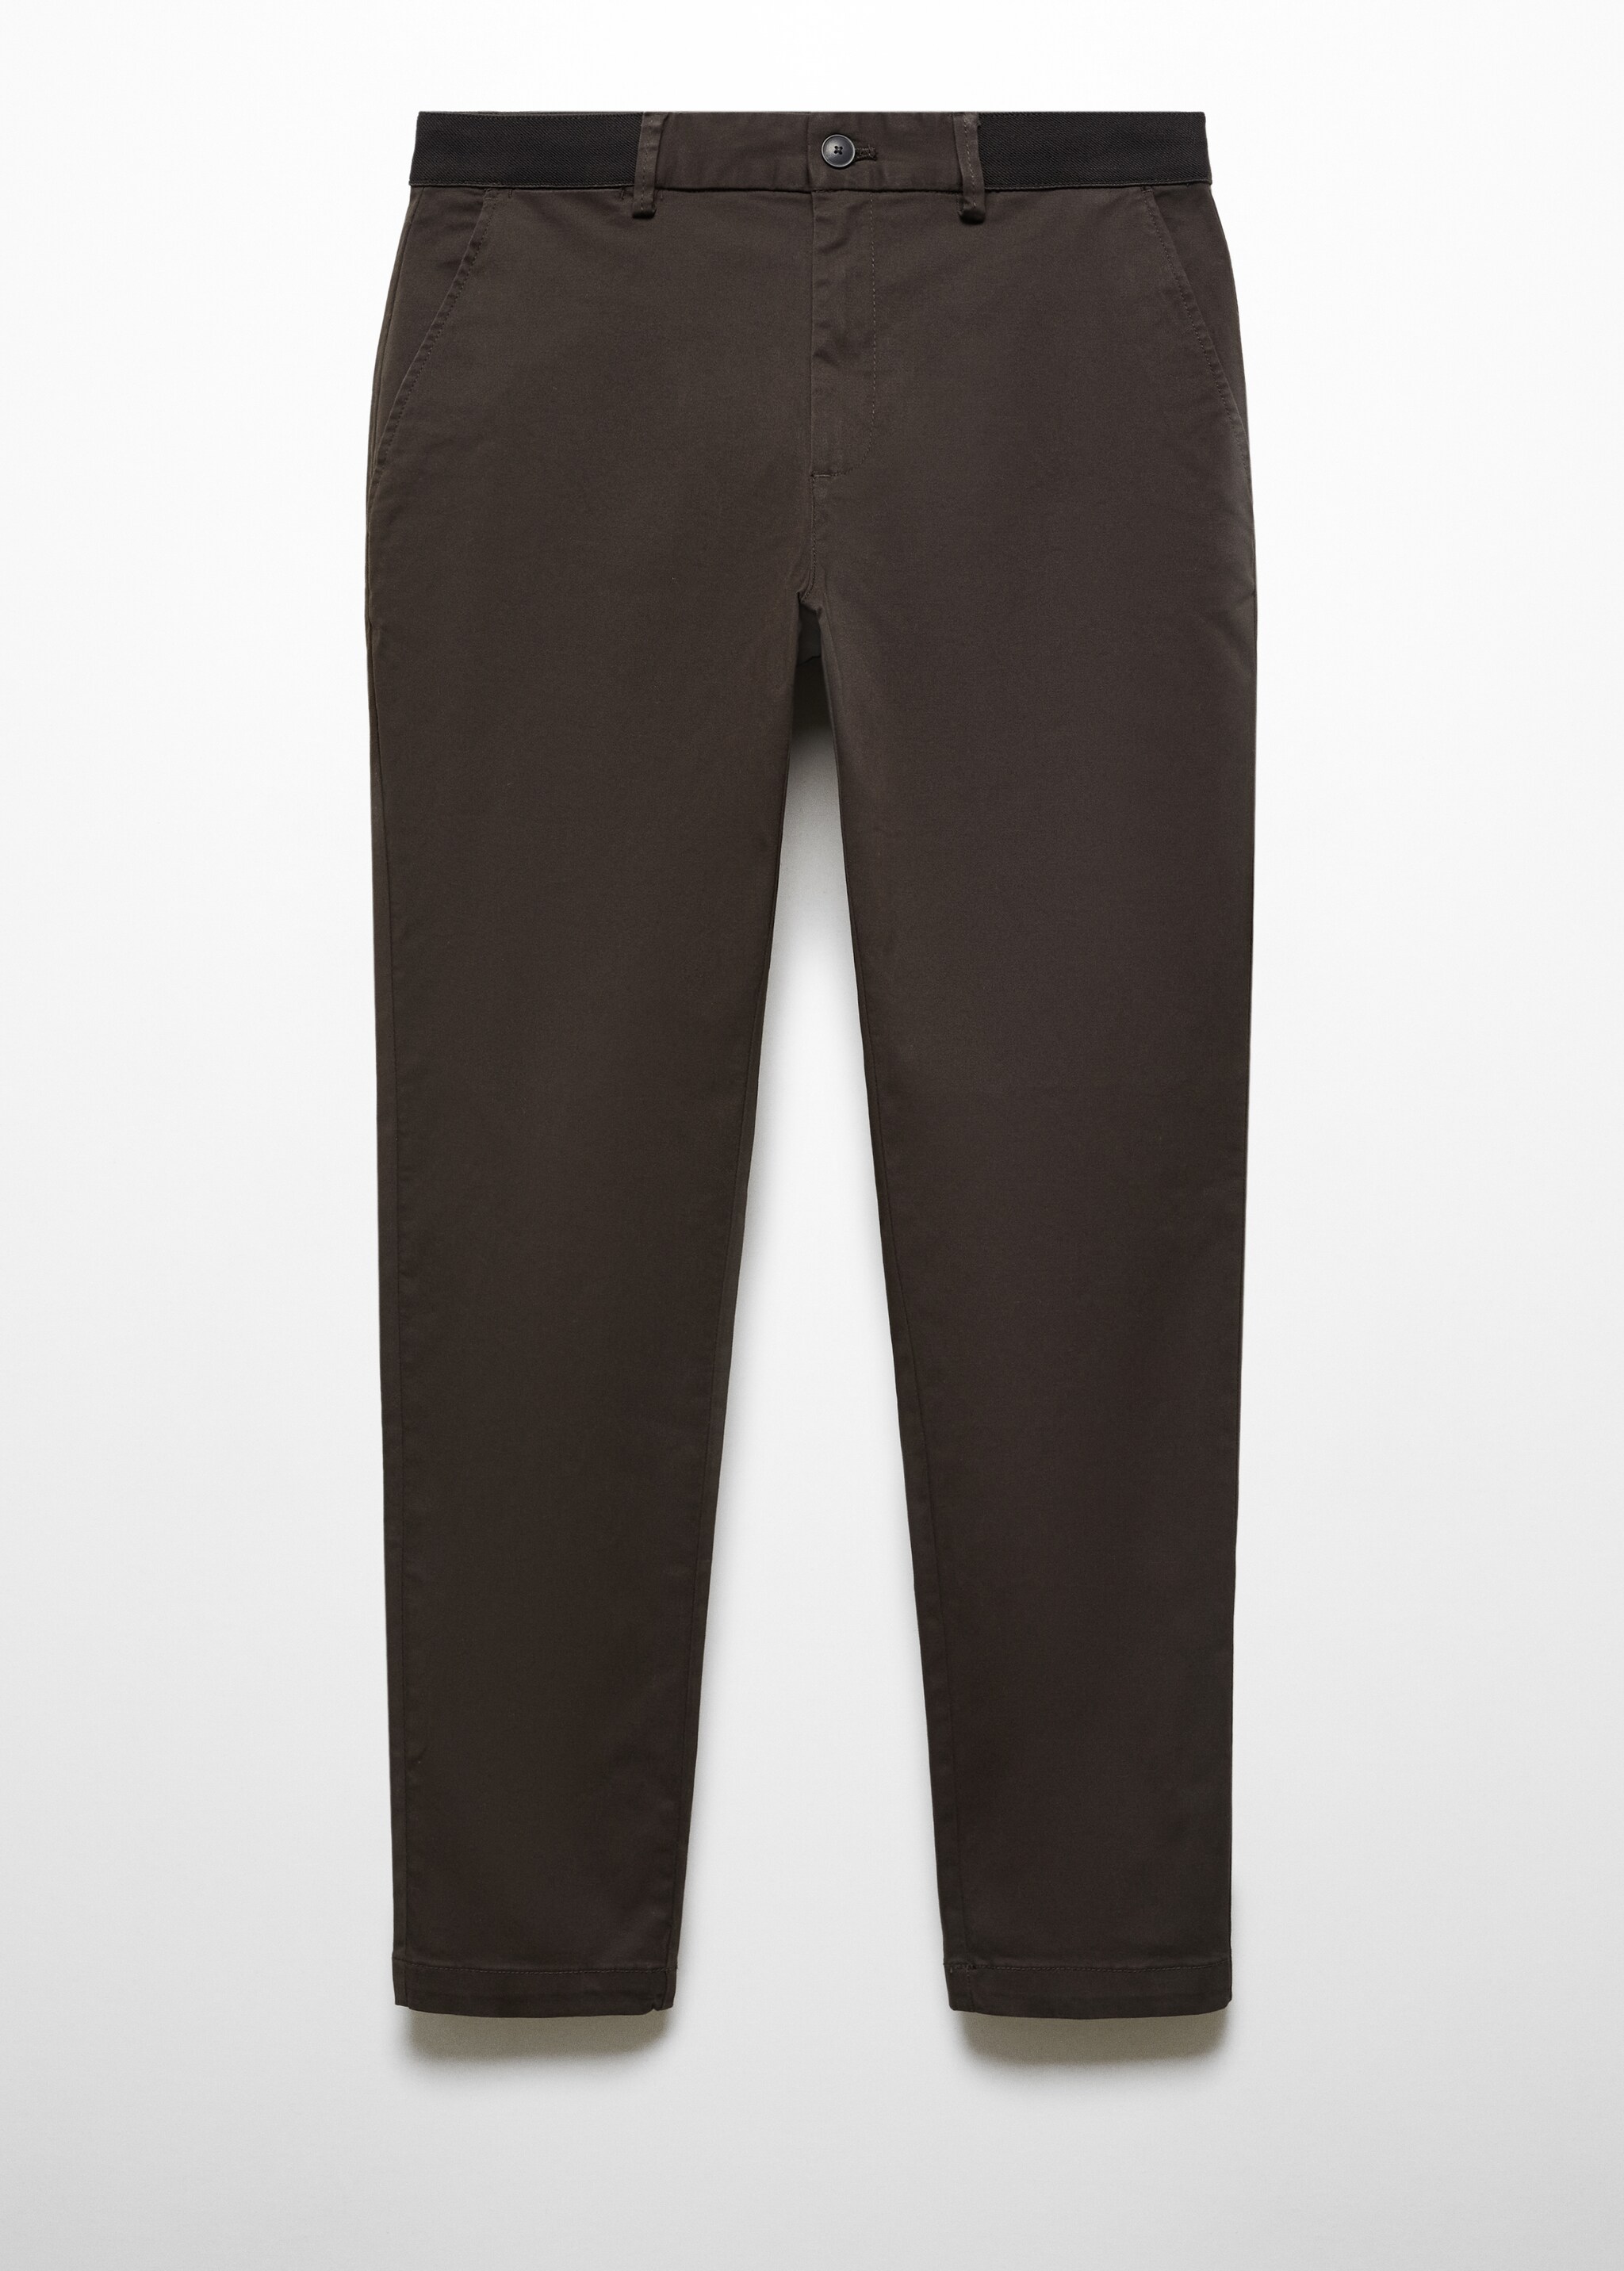 Pantaloni cotone tapered crop - Articolo senza modello